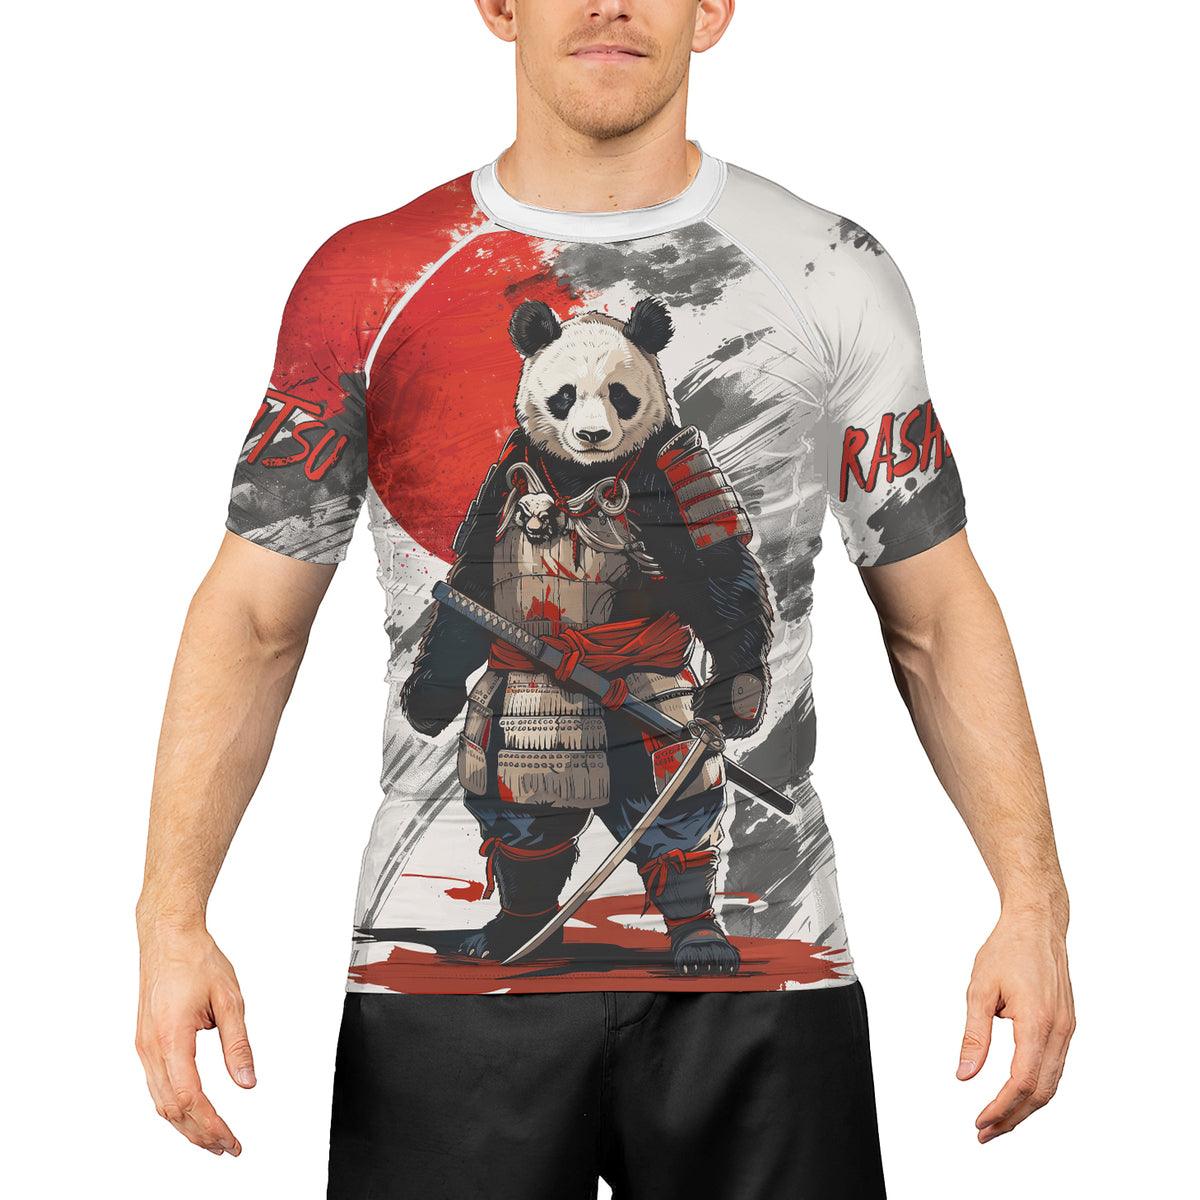 Rashninja Panda Samurai Armor Men's Short Sleeve Rash Guard - Rashninja LLC